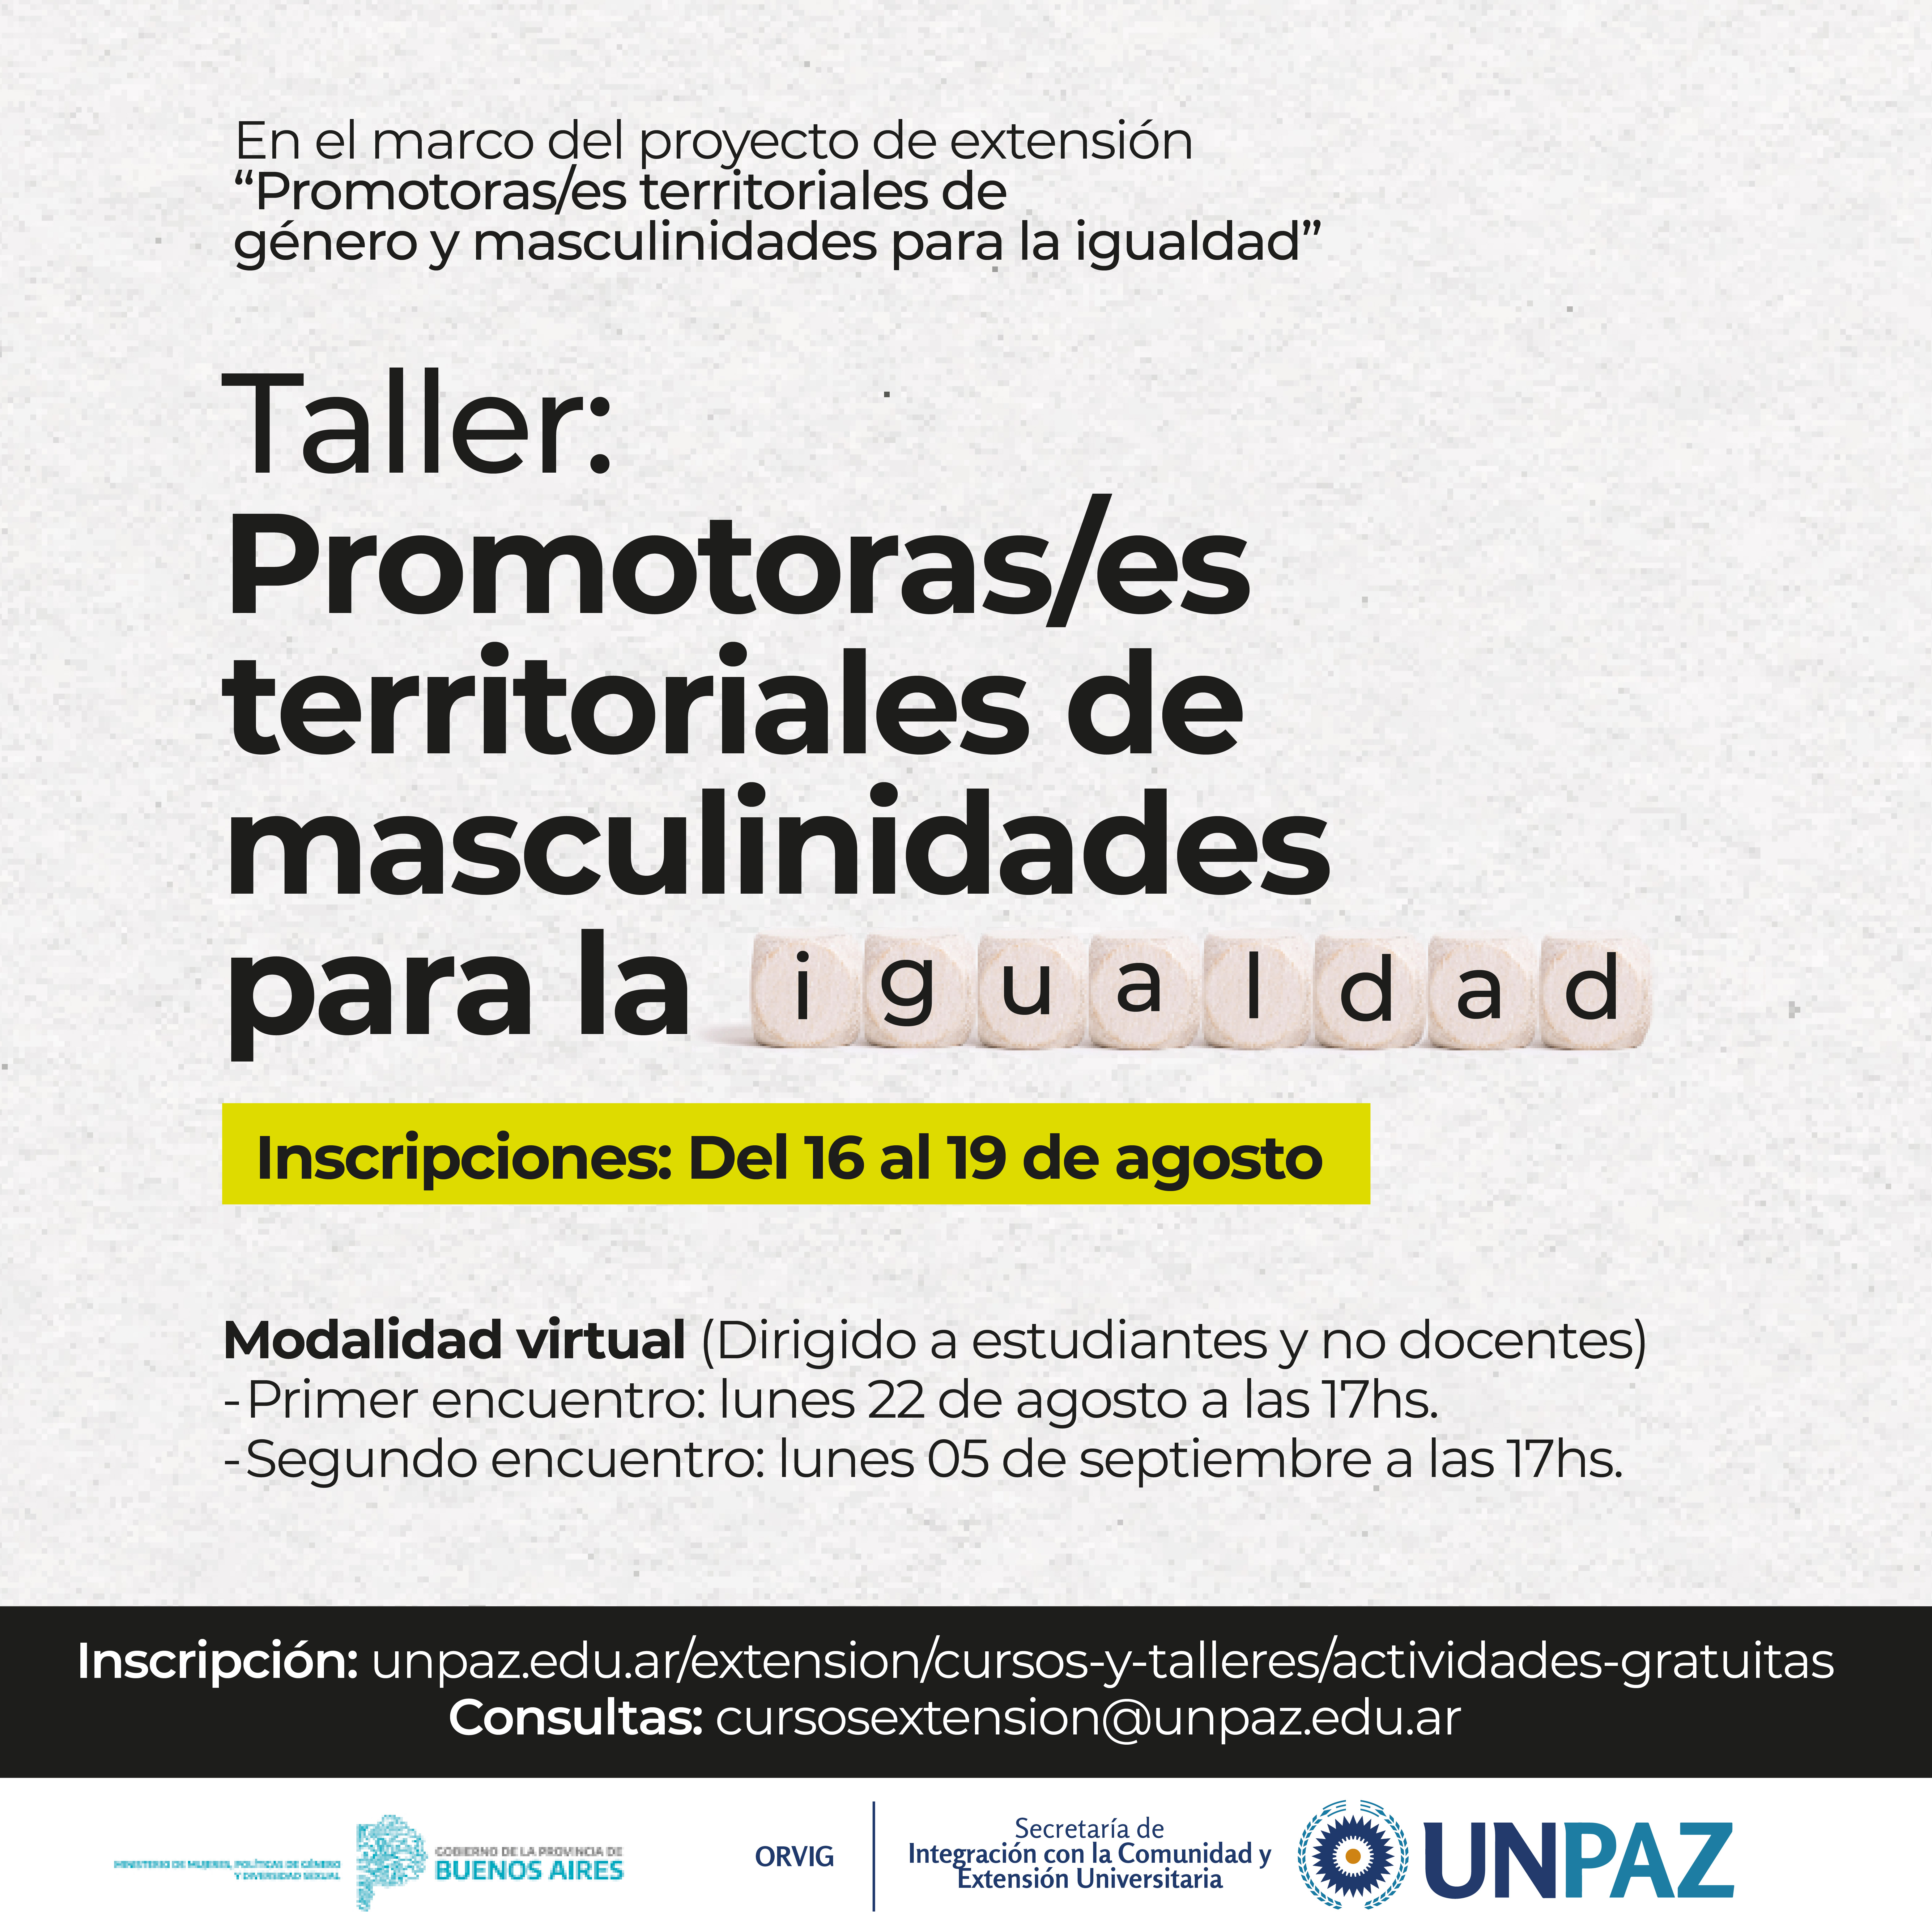 TALLER "PROMOTORAS/ES TERRITORIALES DE MASCULINIDADES PARA LA IGUALDAD" - UNPAZ